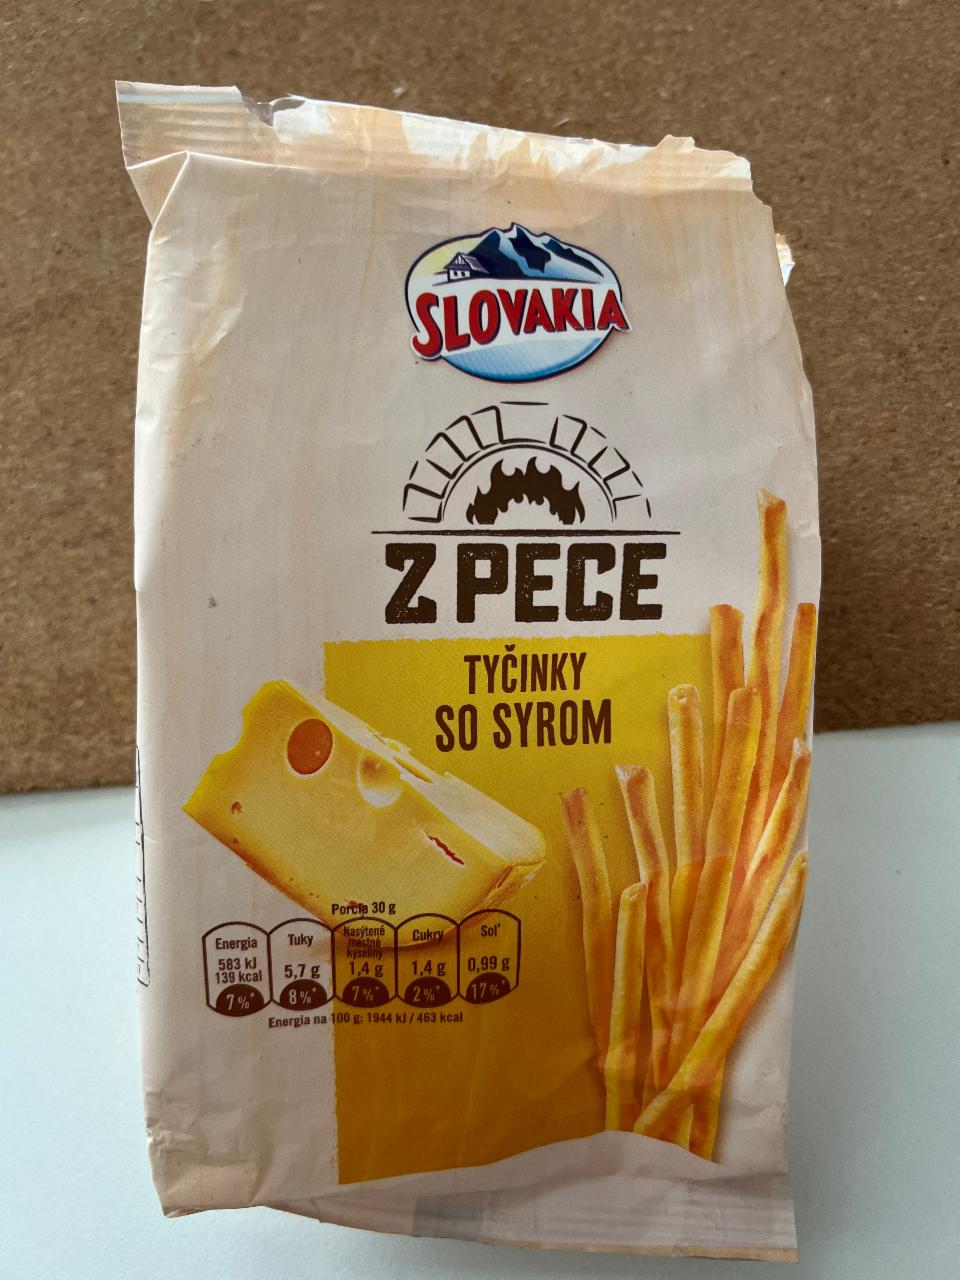 Fotografie - Tyčinky z Pece so syrom Slovakia